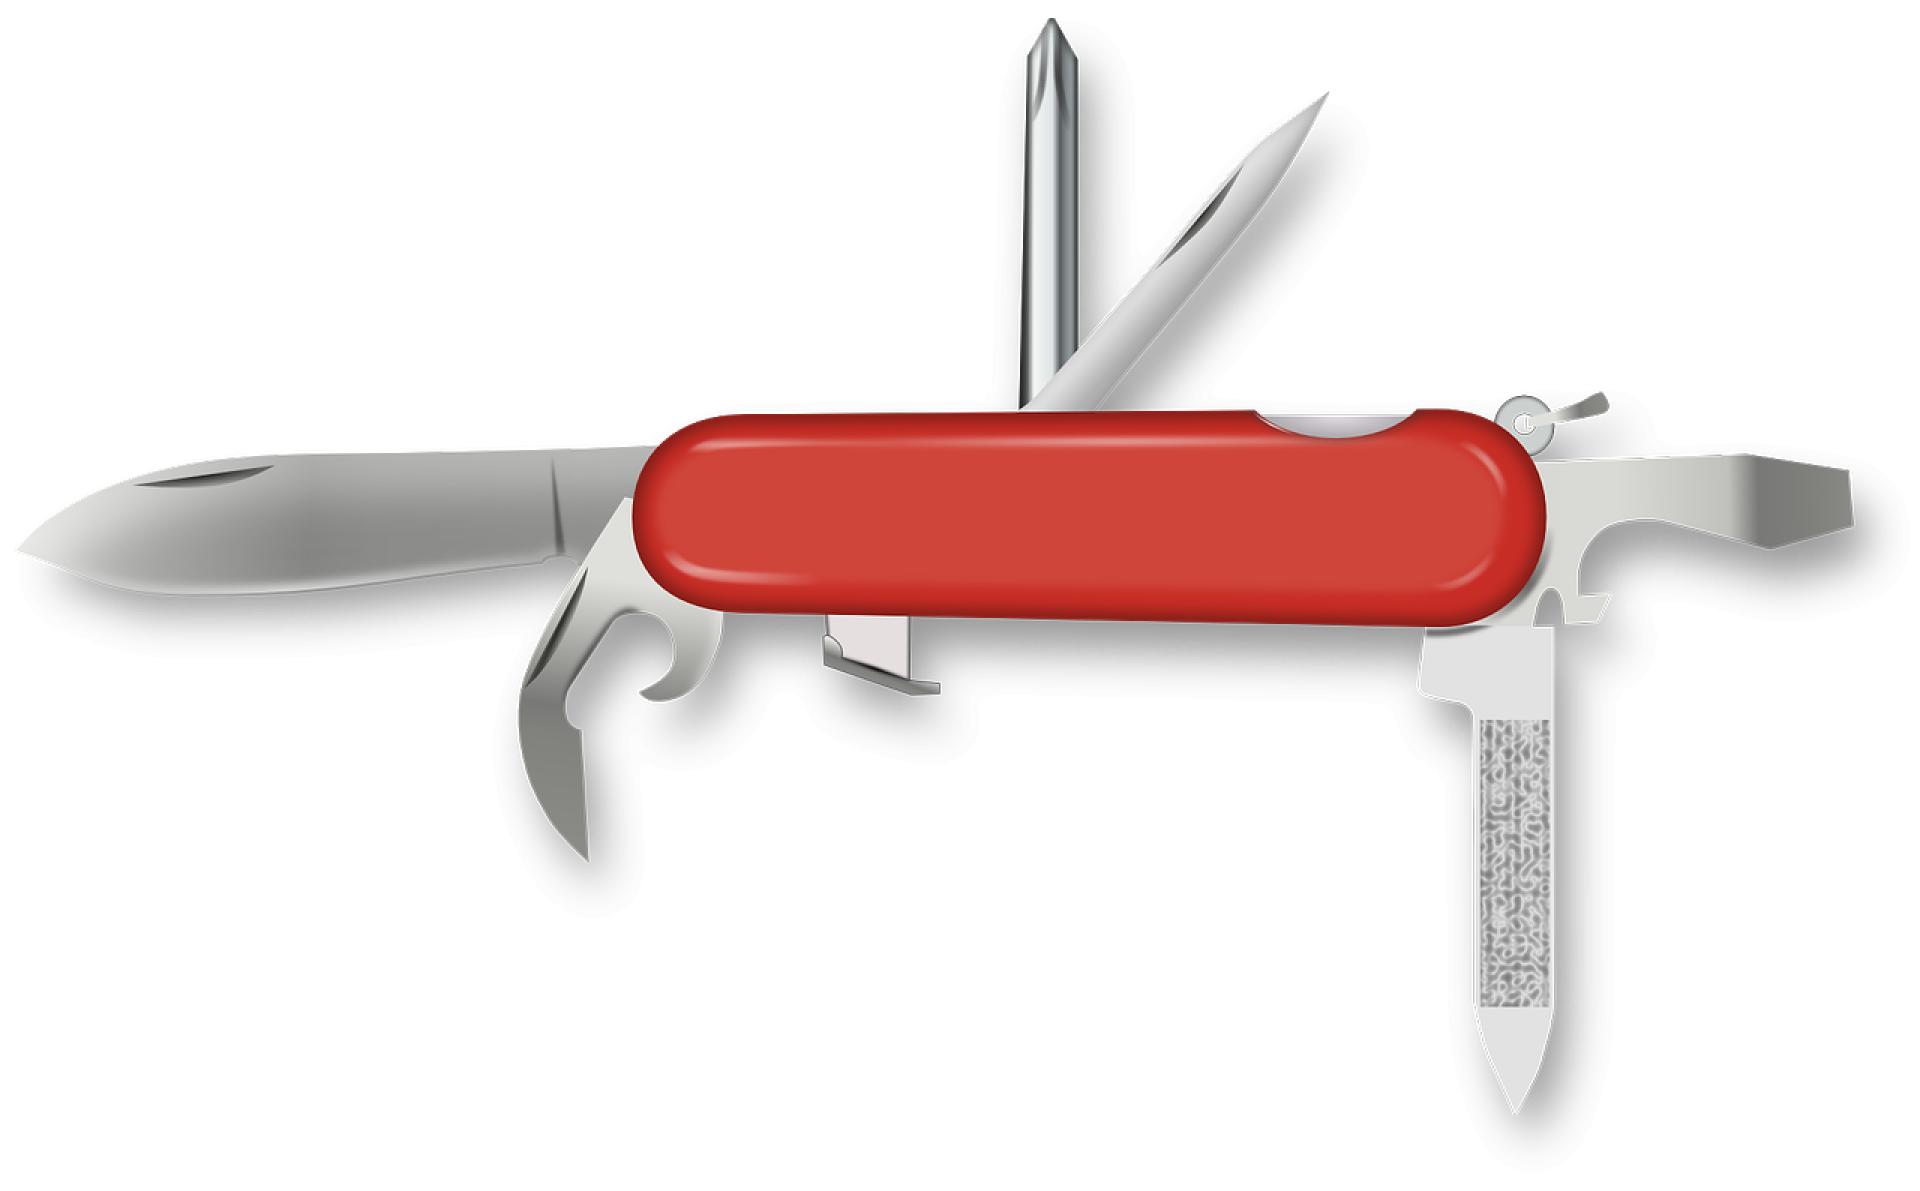 Utile e versatile: il coltellino svizzero!